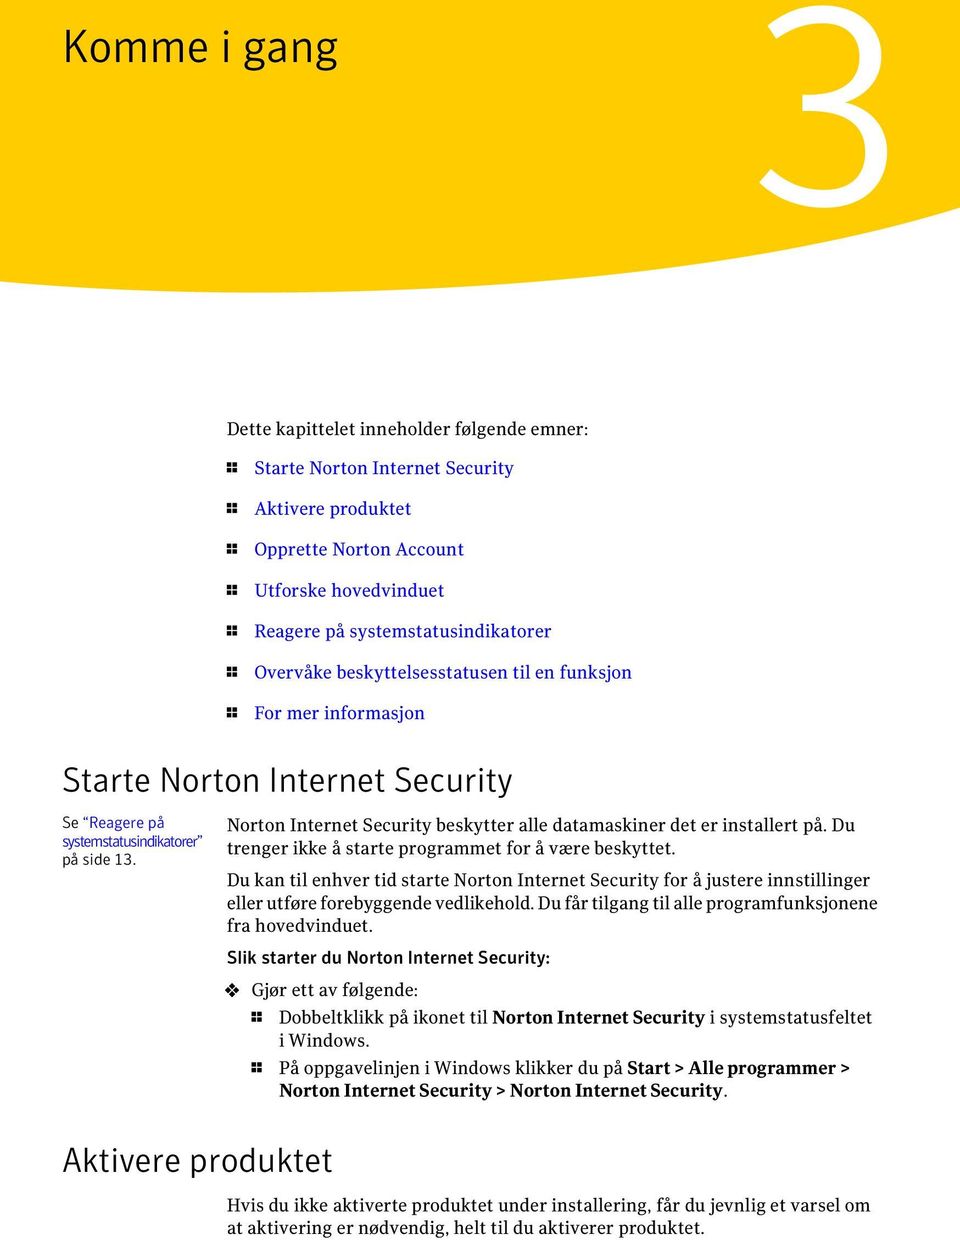 Norton Internet Security beskytter alle datamaskiner det er installert på. Du trenger ikke å starte programmet for å være beskyttet.